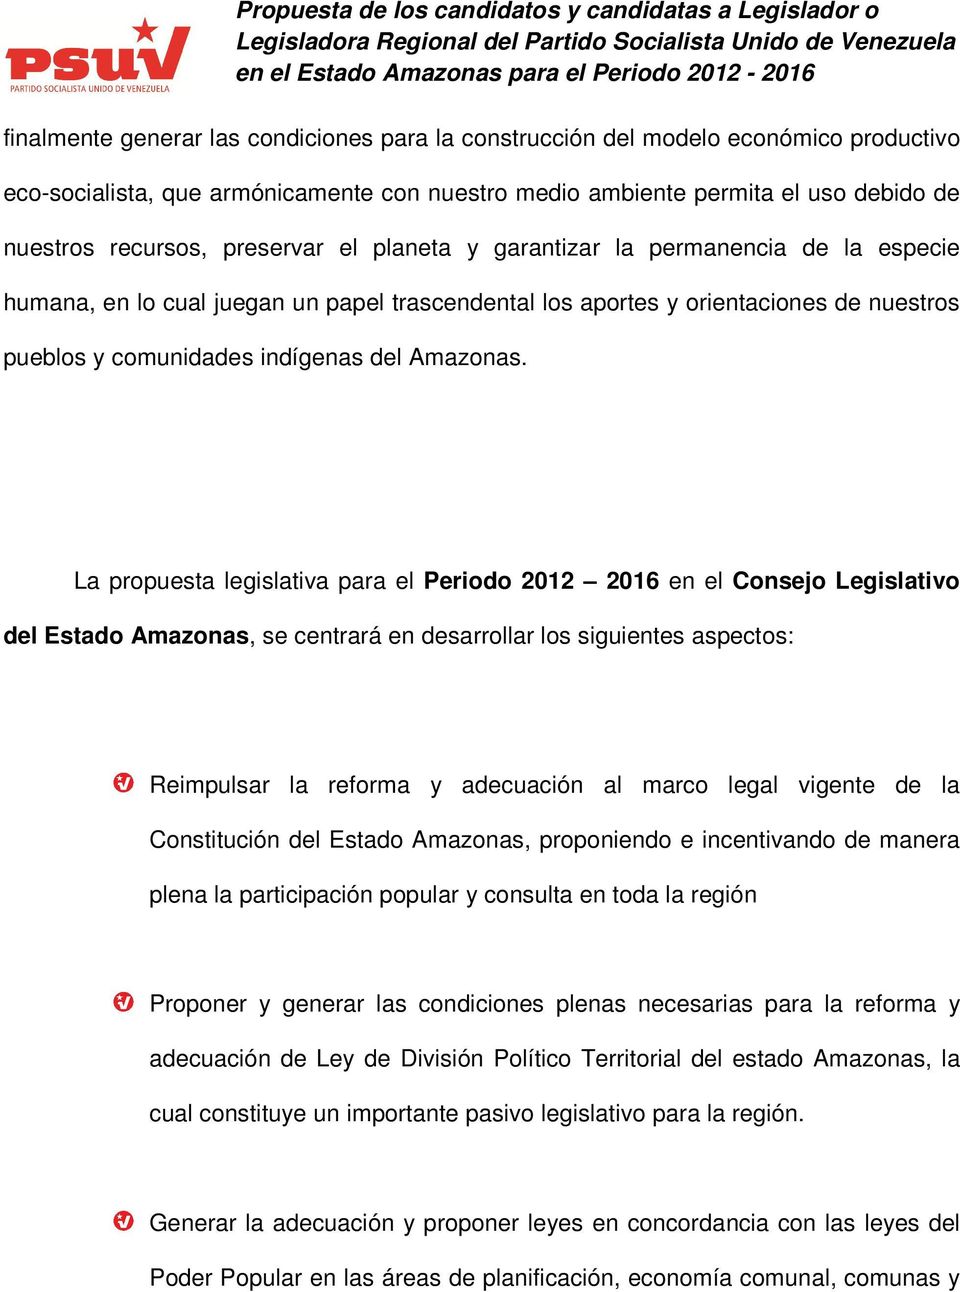 La propuesta legislativa para el Periodo 2012 2016 en el Consejo Legislativo del Estado Amazonas, se centrará en desarrollar los siguientes aspectos: Reimpulsar la reforma y adecuación al marco legal